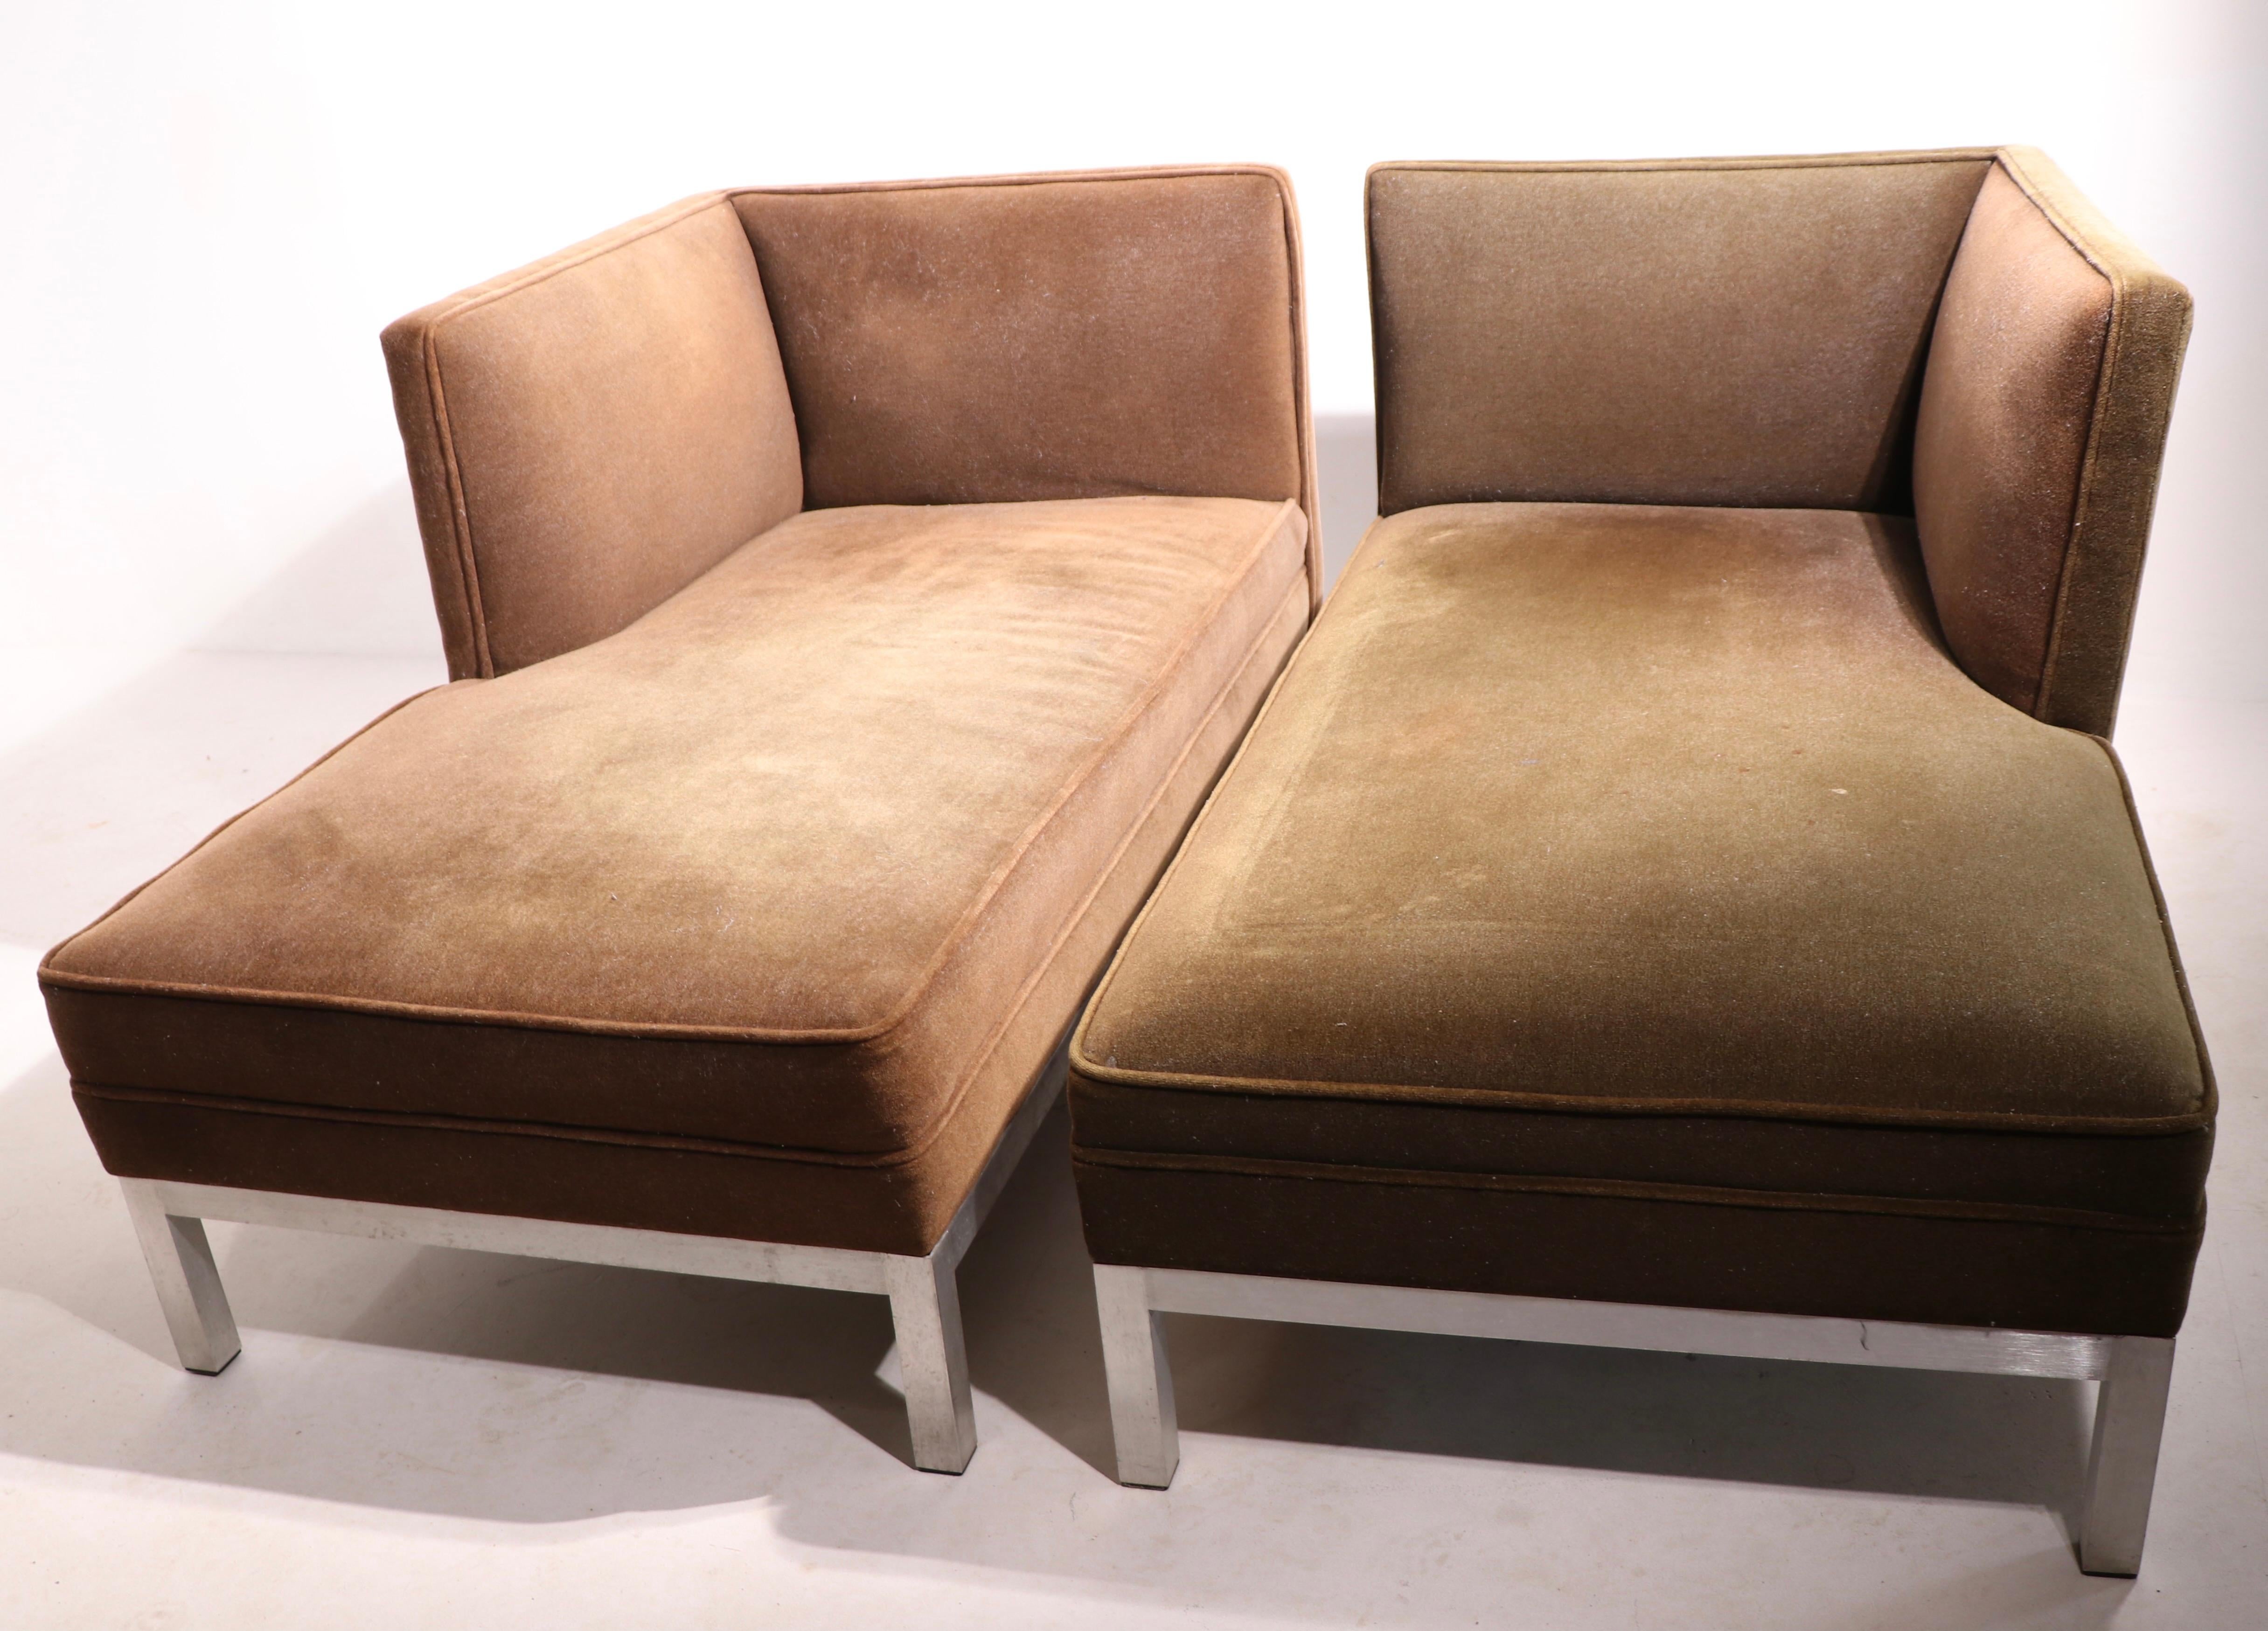 brown jordan furniture